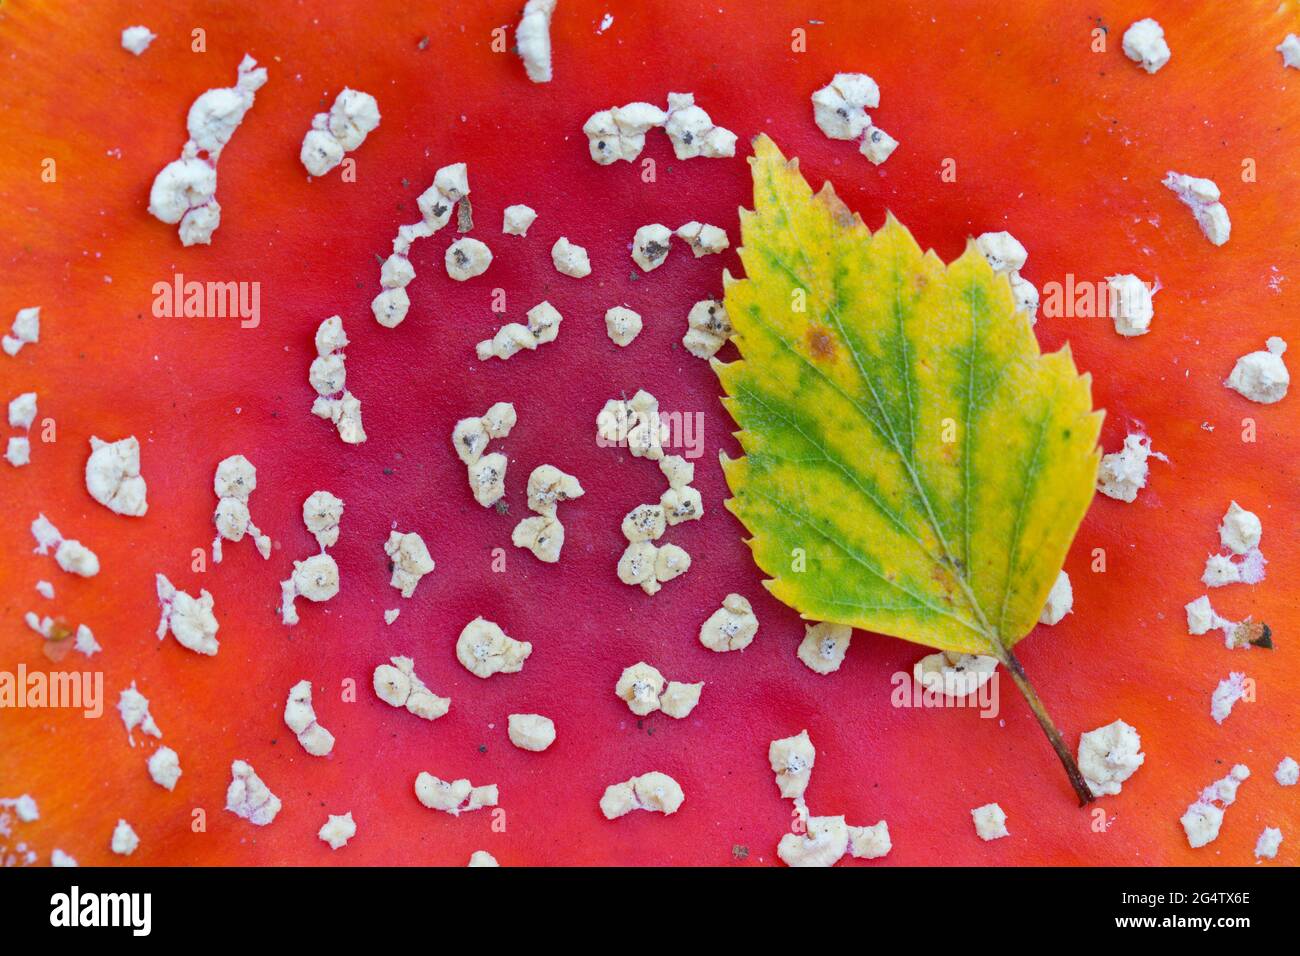 Abgefallene flauschige Birke / Europäische weiße Birke mit Herbstfarben, die auf der Kappe des Fliegenpilzes ruhen / Fliegenpilz (Amanita muscaria) Stockfoto